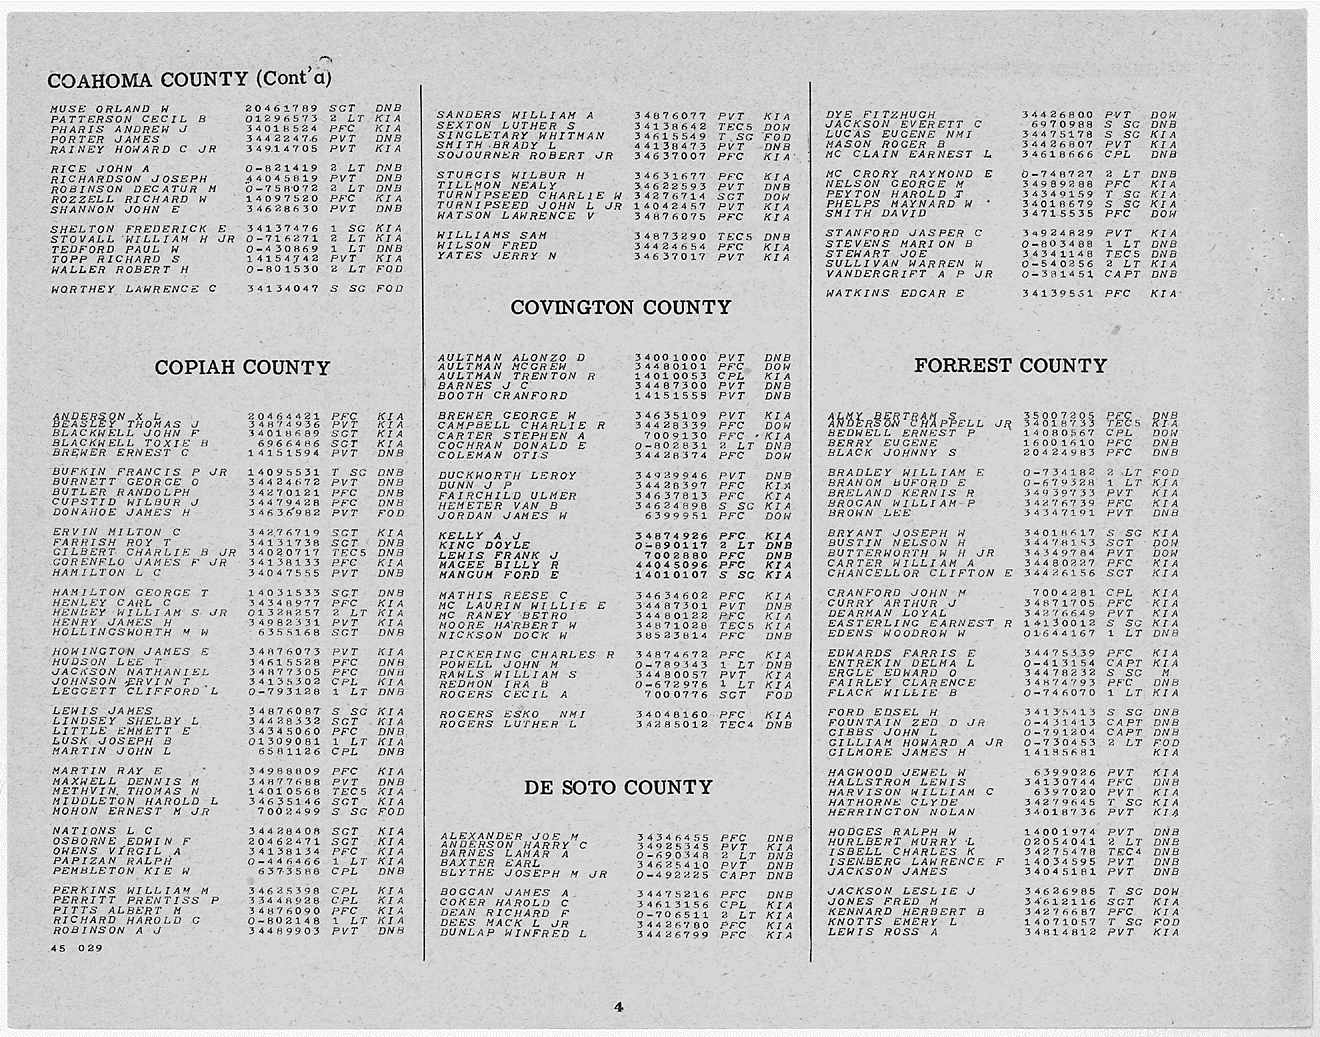 WW II List of Dead - Copiah